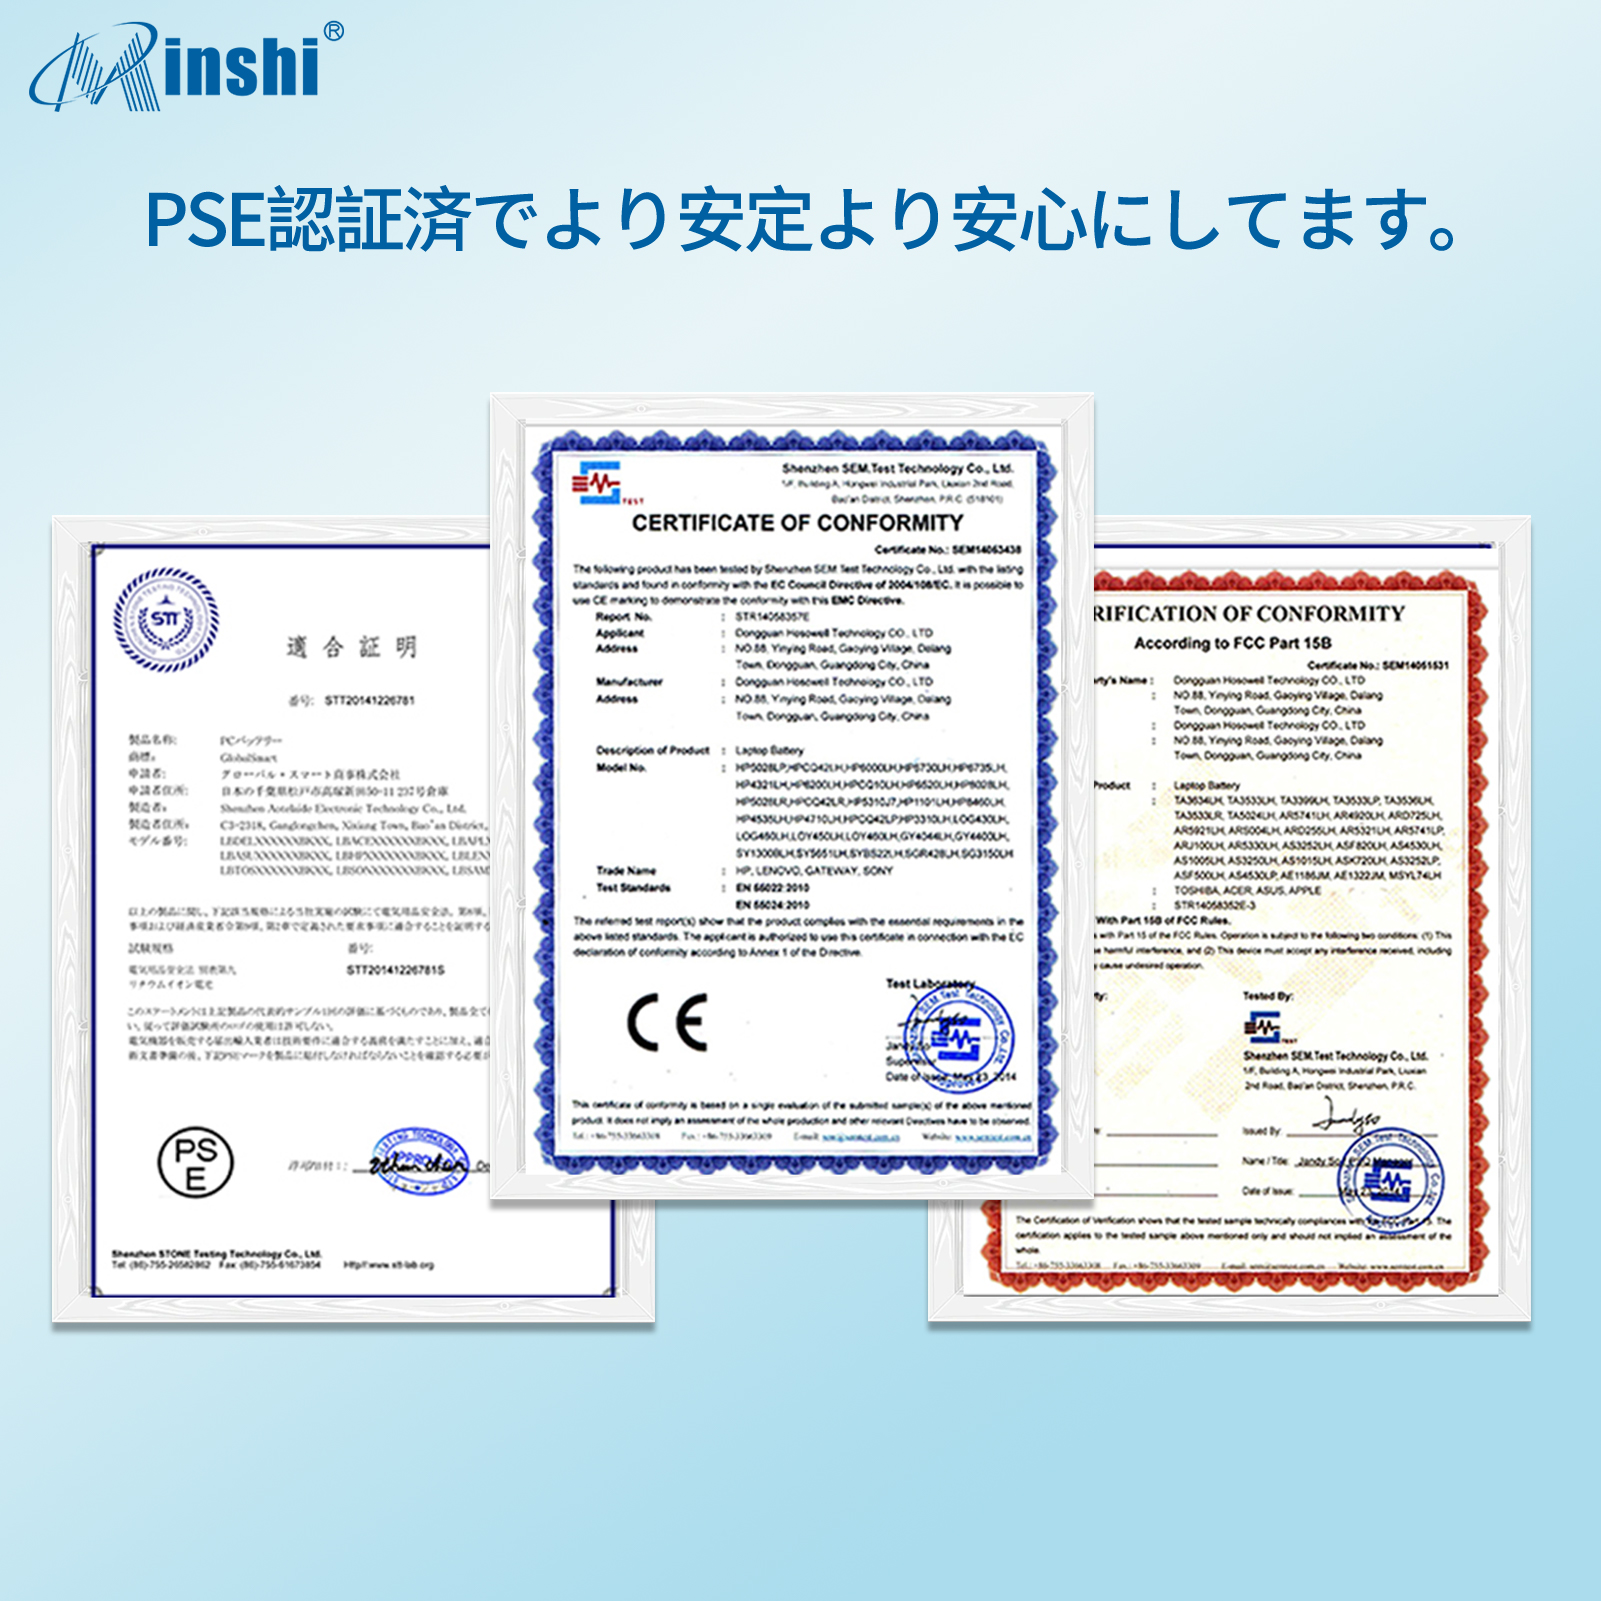 minshi】MSI MSI CR630【5200mAh 11.1V】対応用 高性能 ノートパソコン